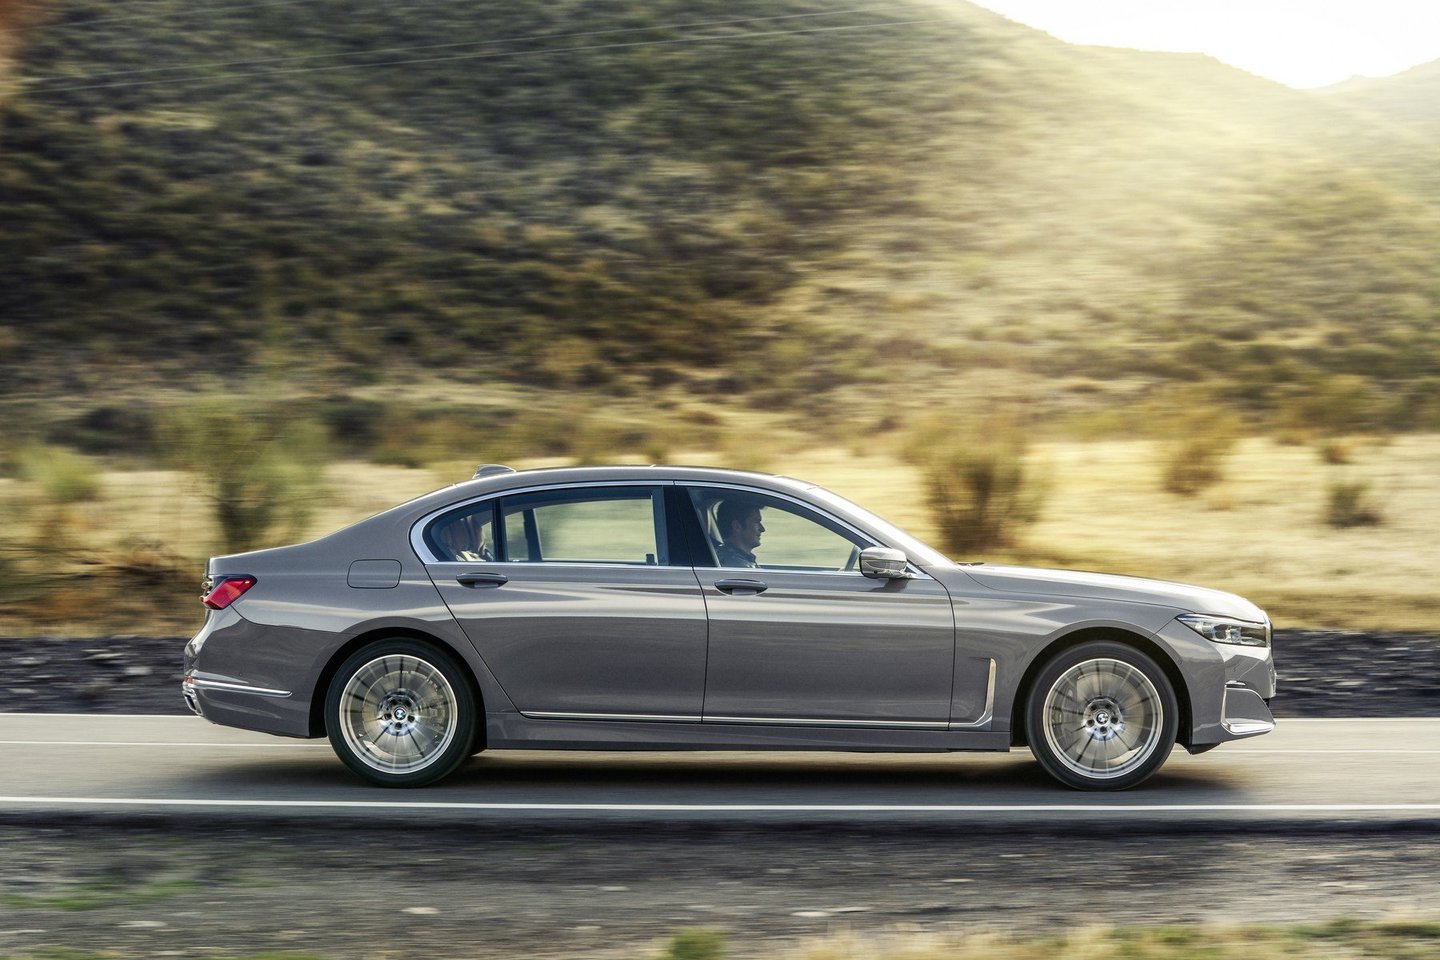  BMW pristatė atnaujintą 7 serijos modelį.<br> Gamintojo nuotr.